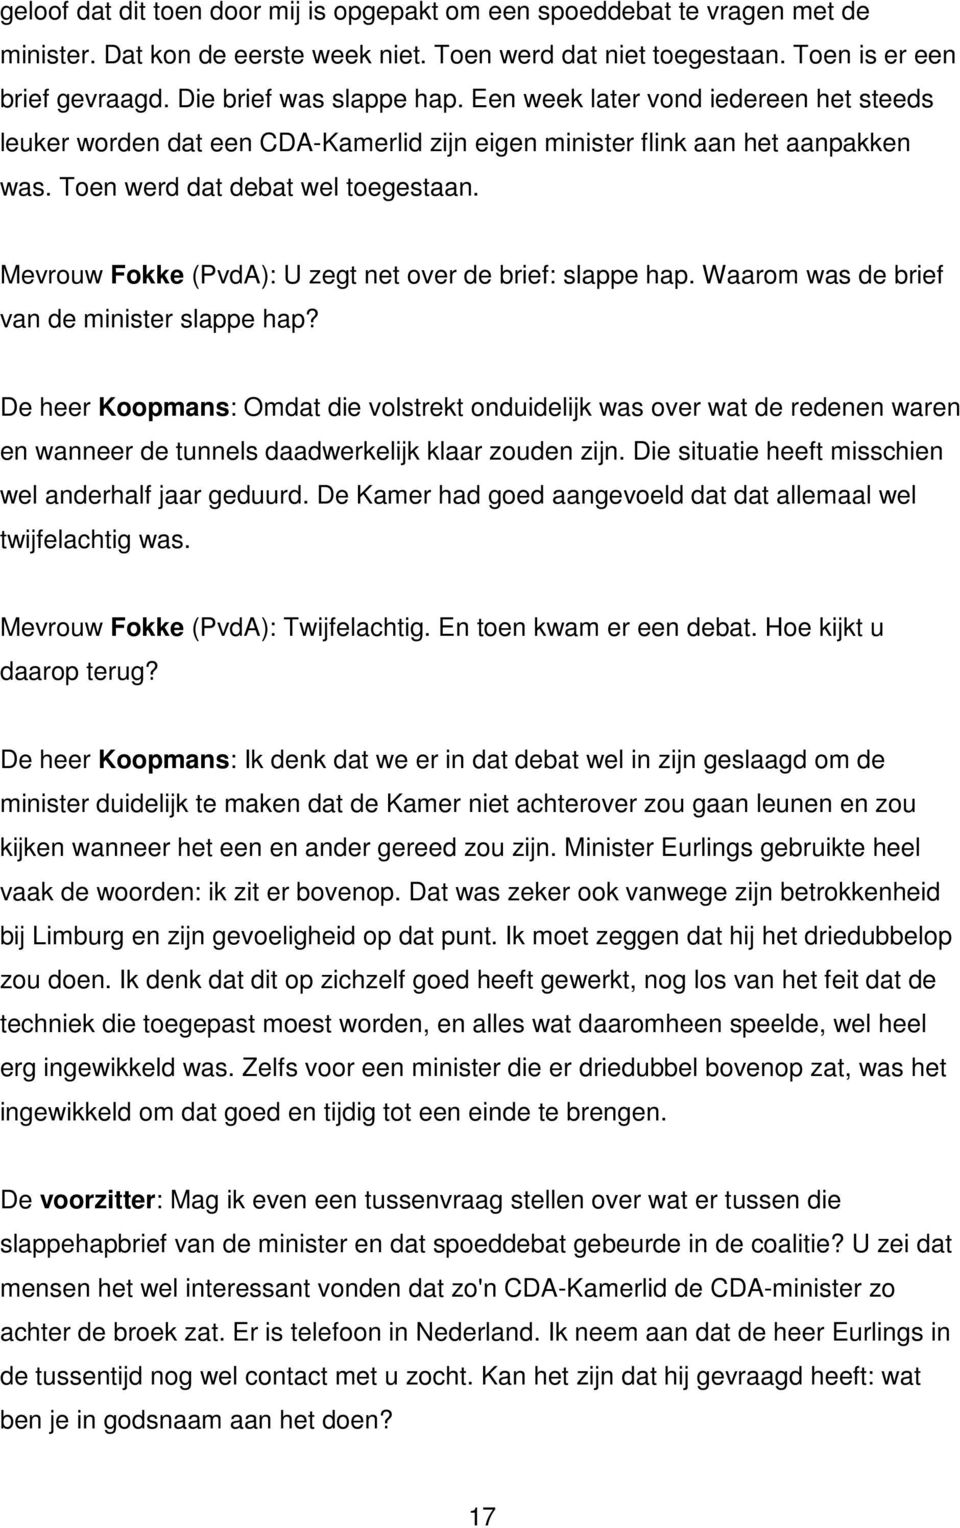 Mevrouw Fokke (PvdA): U zegt net over de brief: slappe hap. Waarom was de brief van de minister slappe hap?